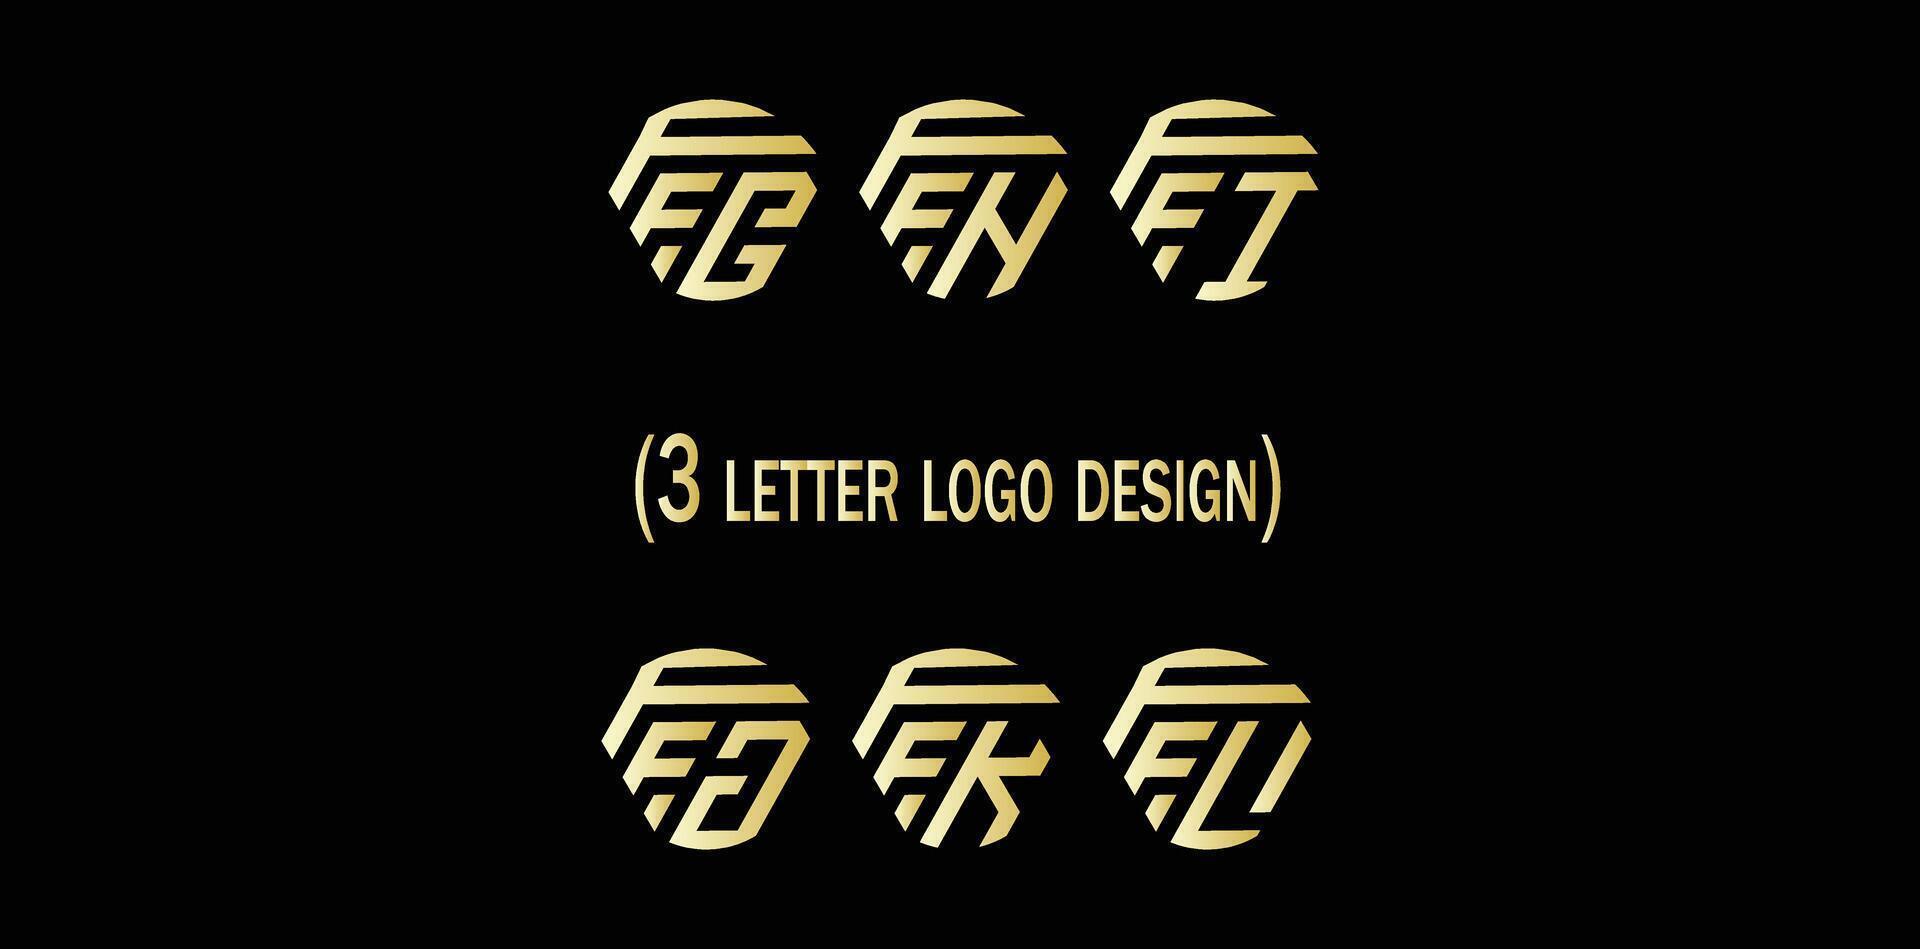 creativo 3 letra logo diseño,ffg,ffh,ffi,ffj,ffk,ffl, vector